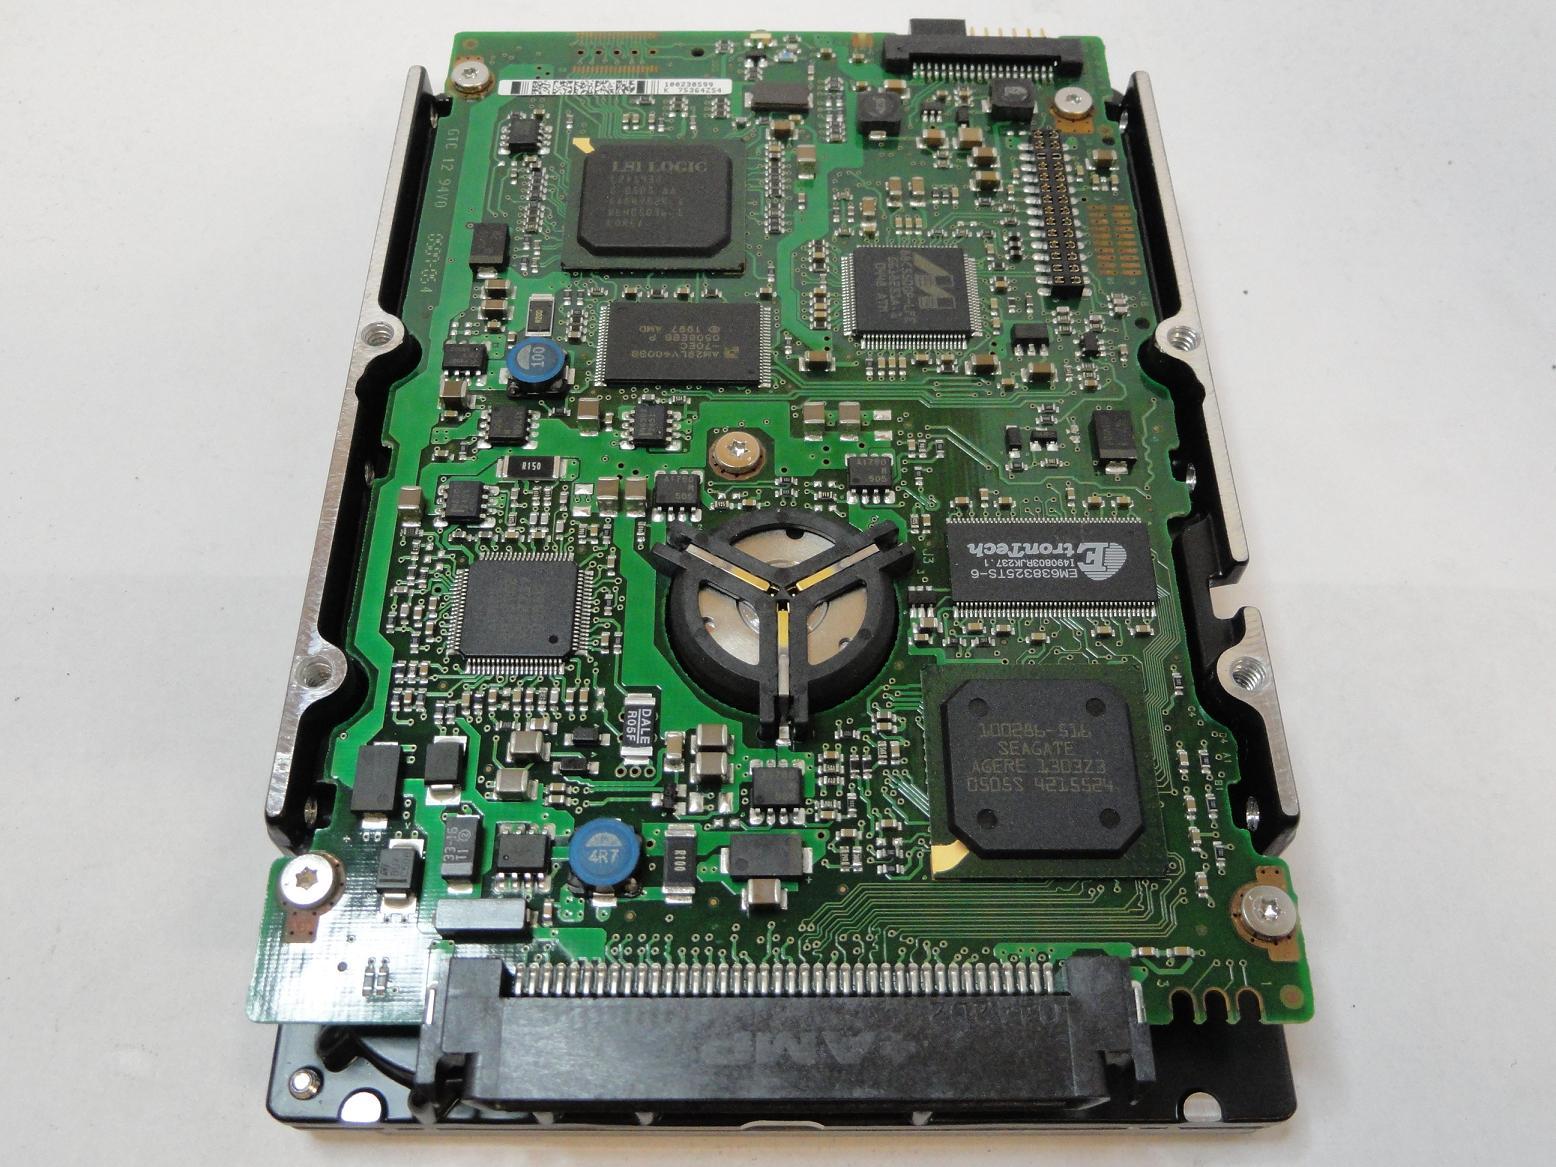 MC5443_9V2006-003_Seagate 146GB SCSI 80 Pin 10Krpm 3.5in HDD - Image2